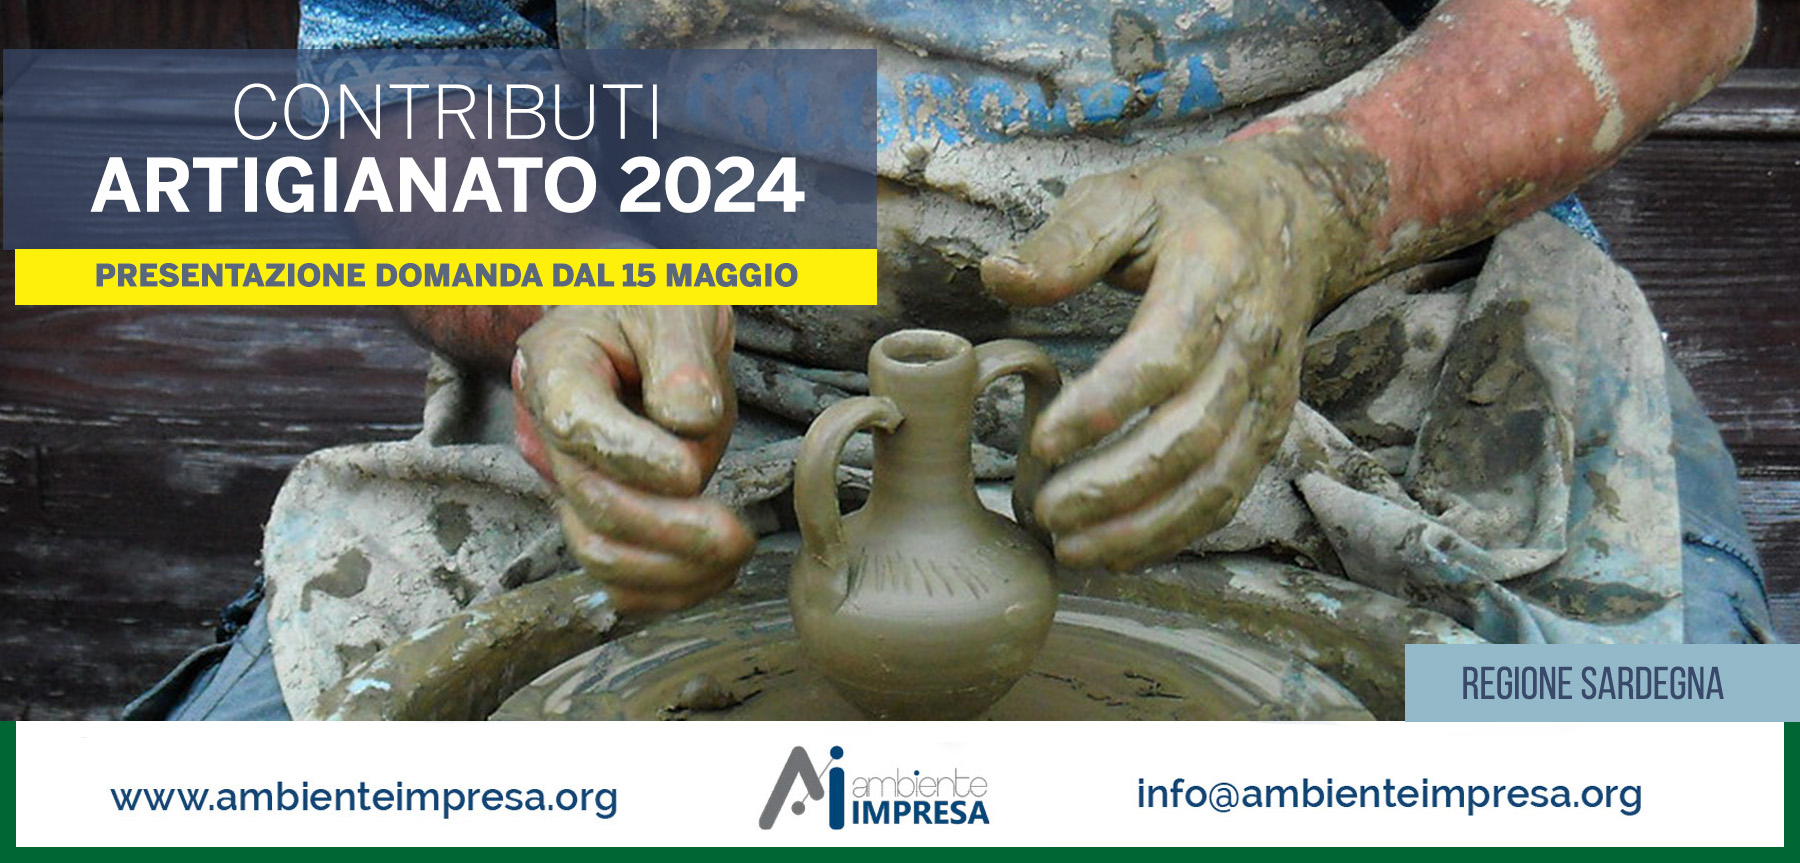 Contributi Artigianato 2024 Regione Sardegna - Ambiente Impresa srl - Cagliari